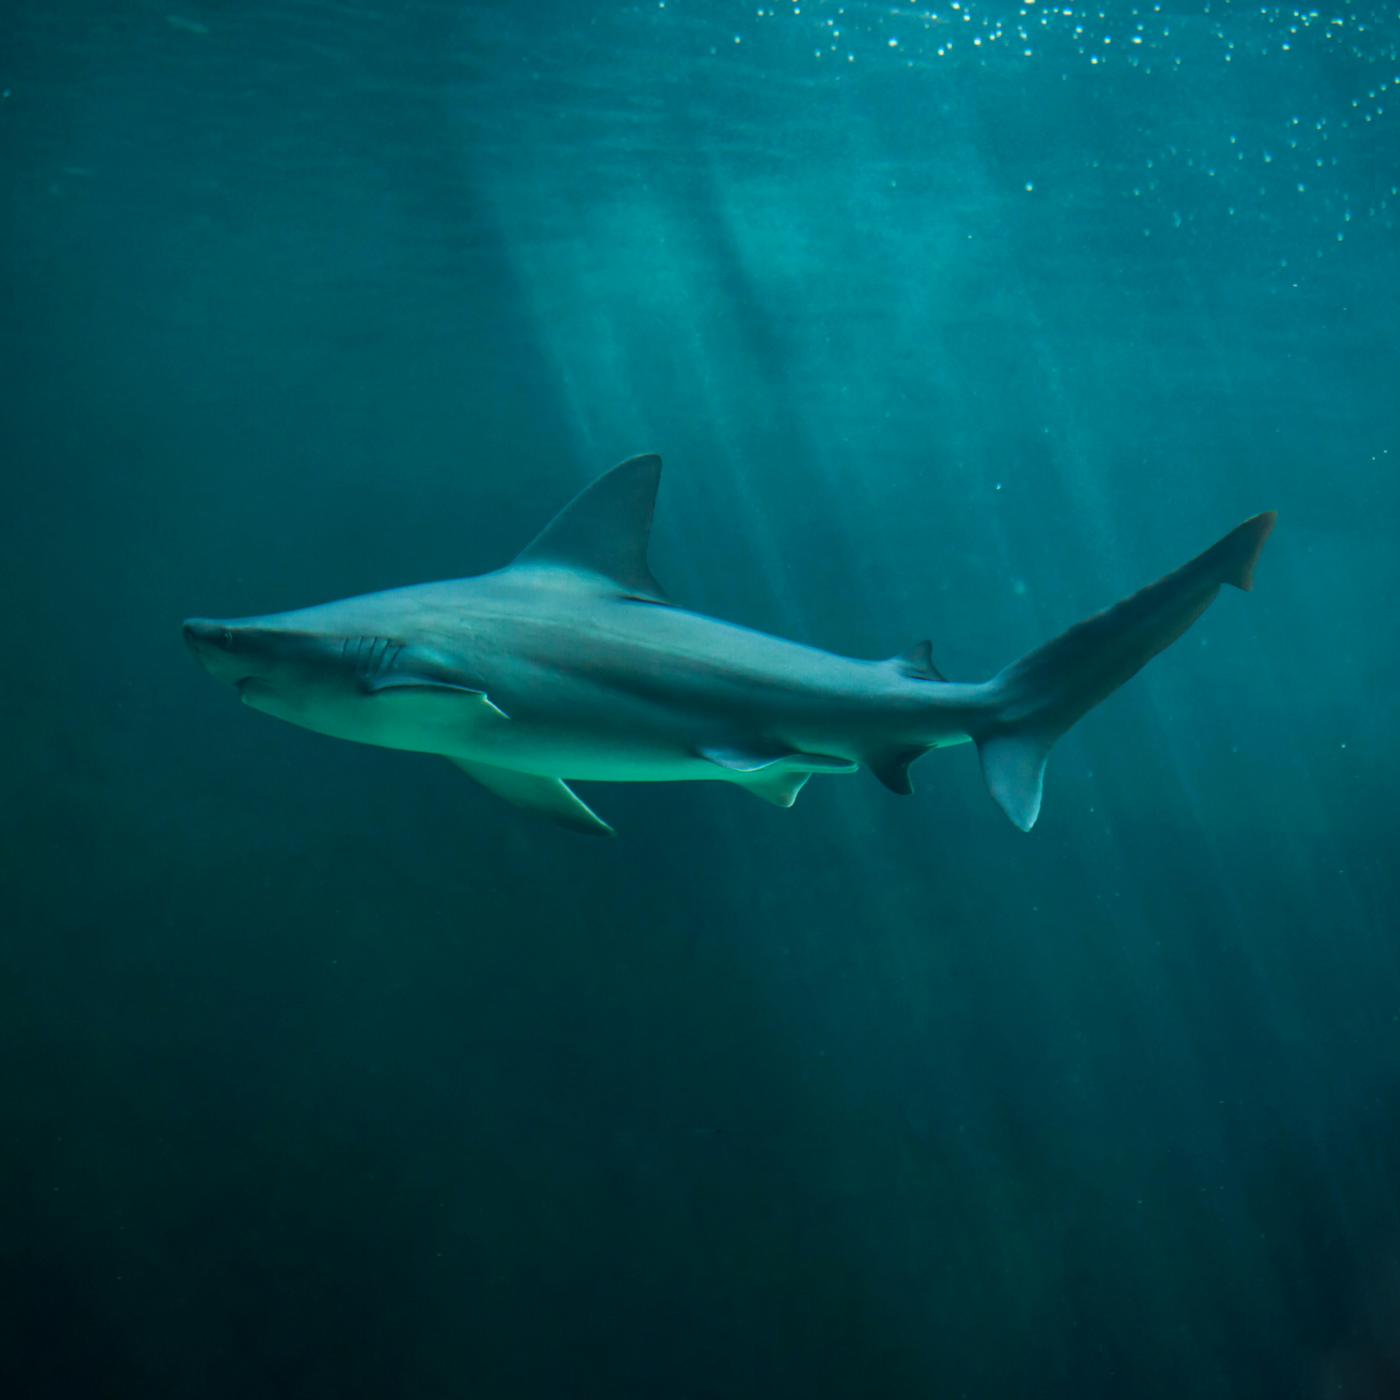 Sandbar shark swimming in a vast ocean.